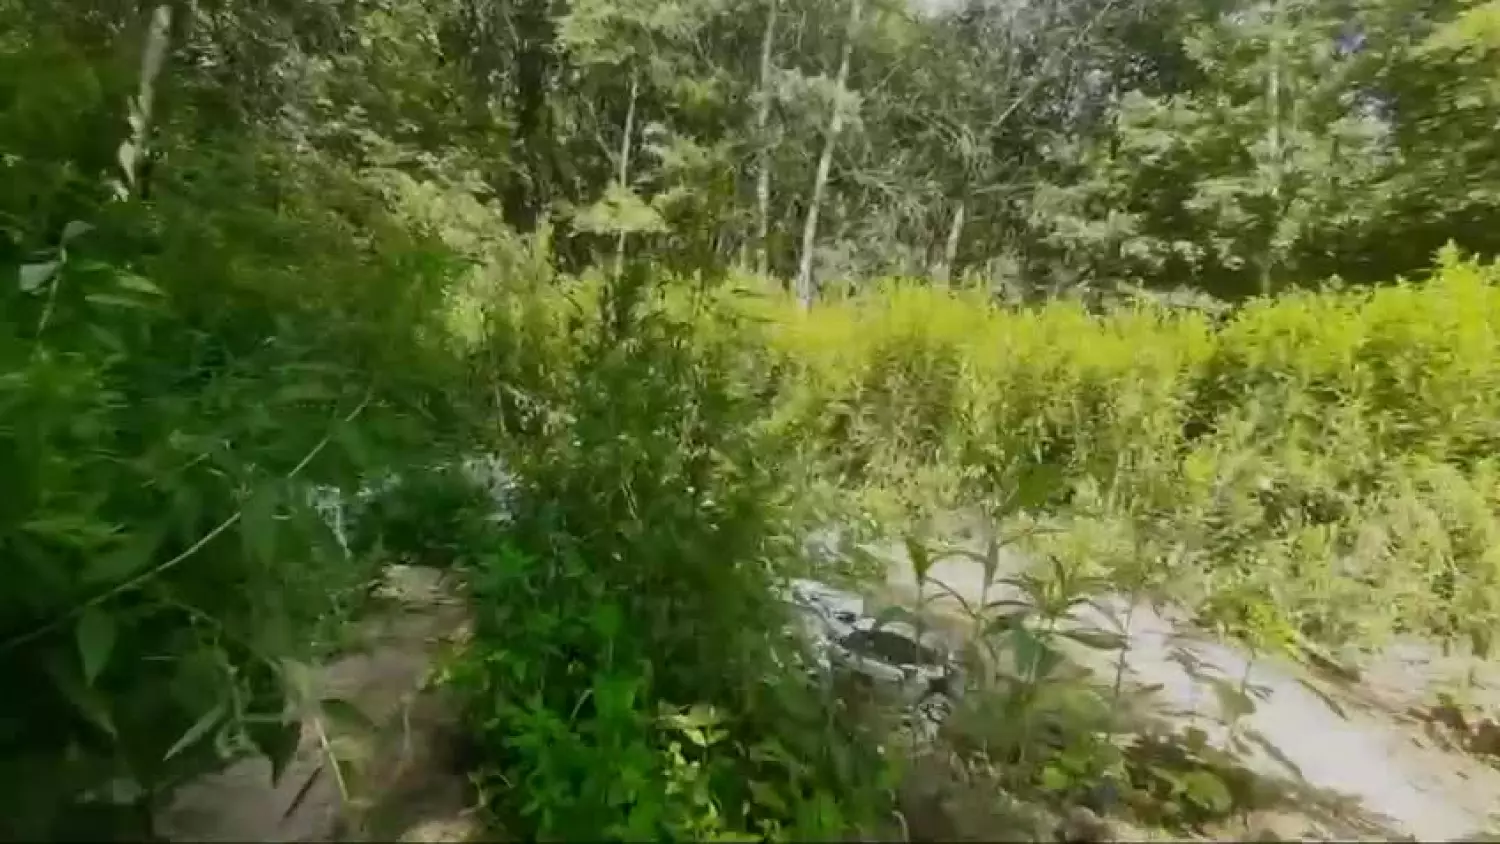 Policyjny nalot na plantację marihuany w lesie w Karczewie